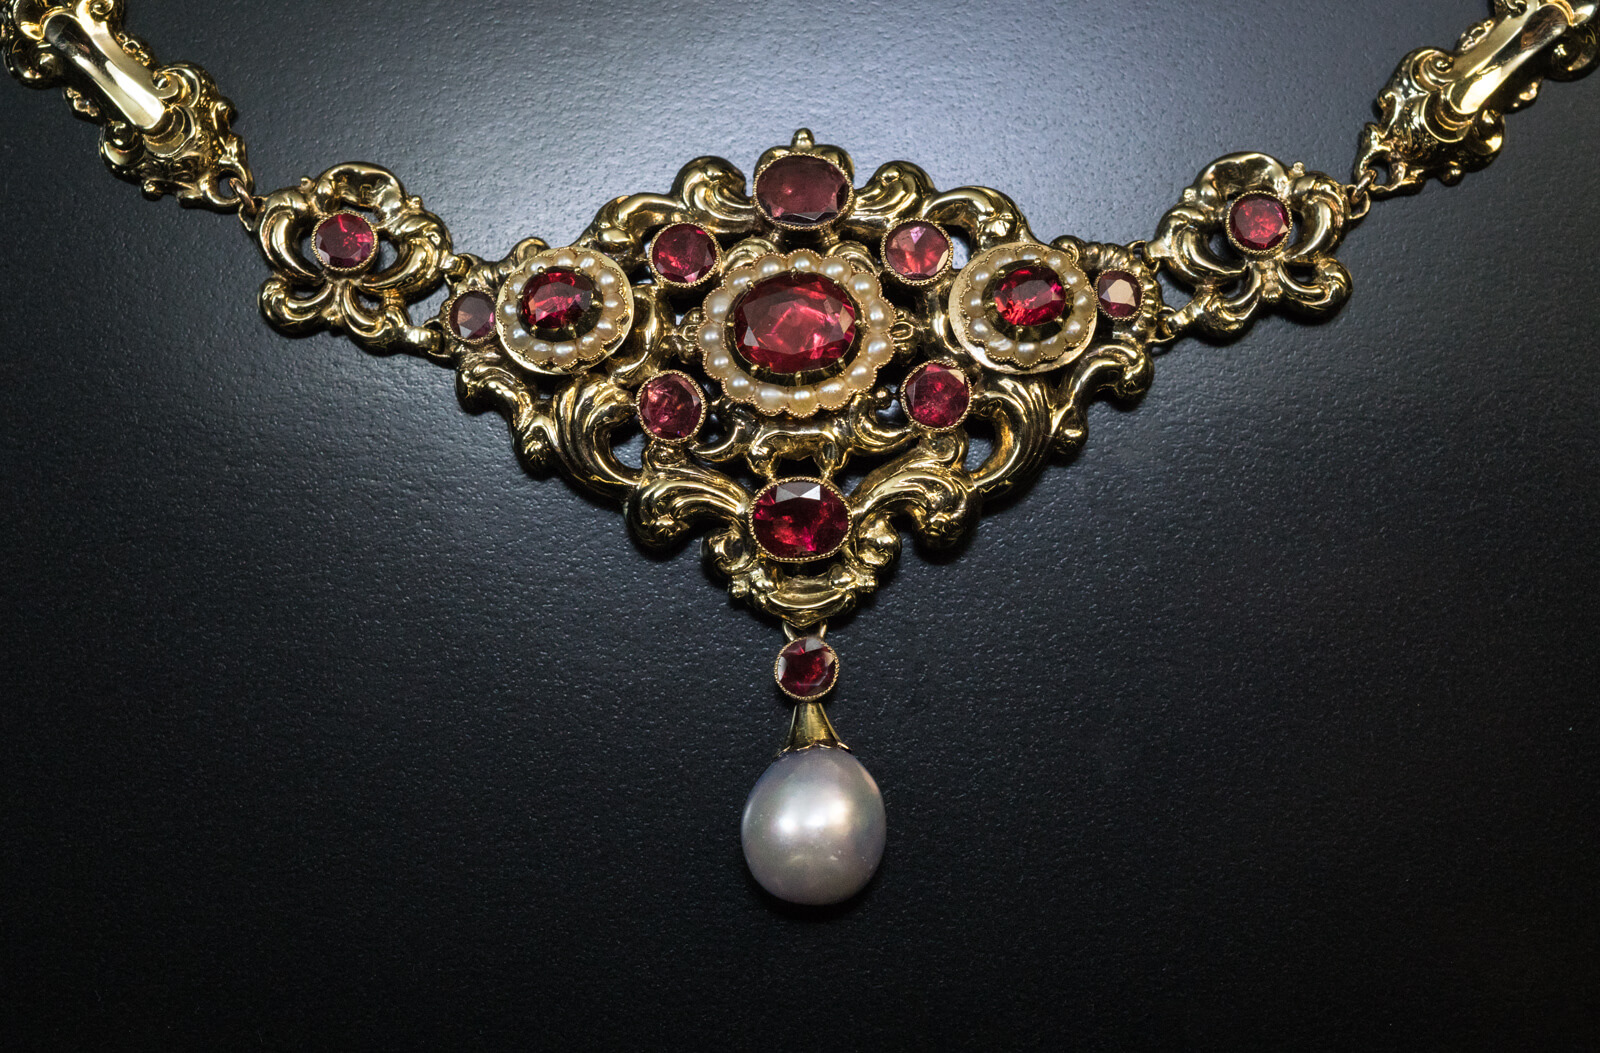 Antique Renaissance Revival Garnet Pearl Gold Necklace - Antique ...